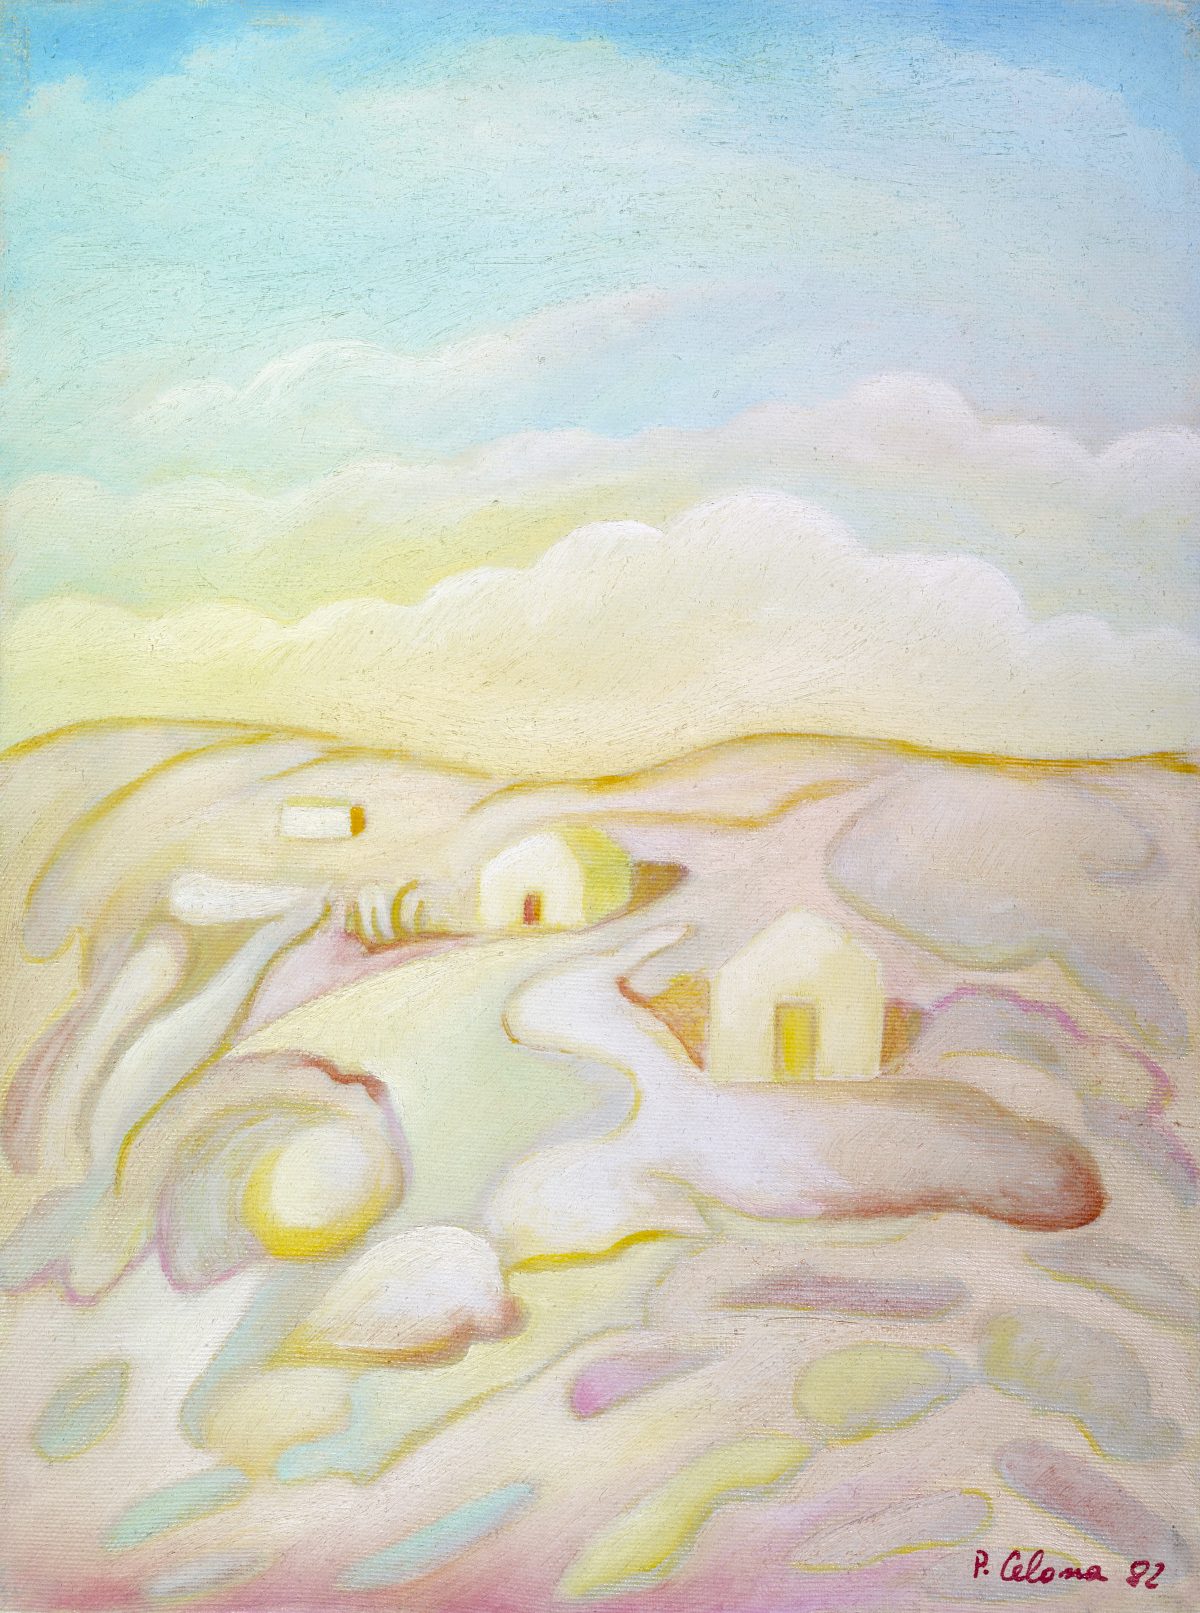 Paesaggio, 2004
Olio su tela
40 x 30 cm,
PV006